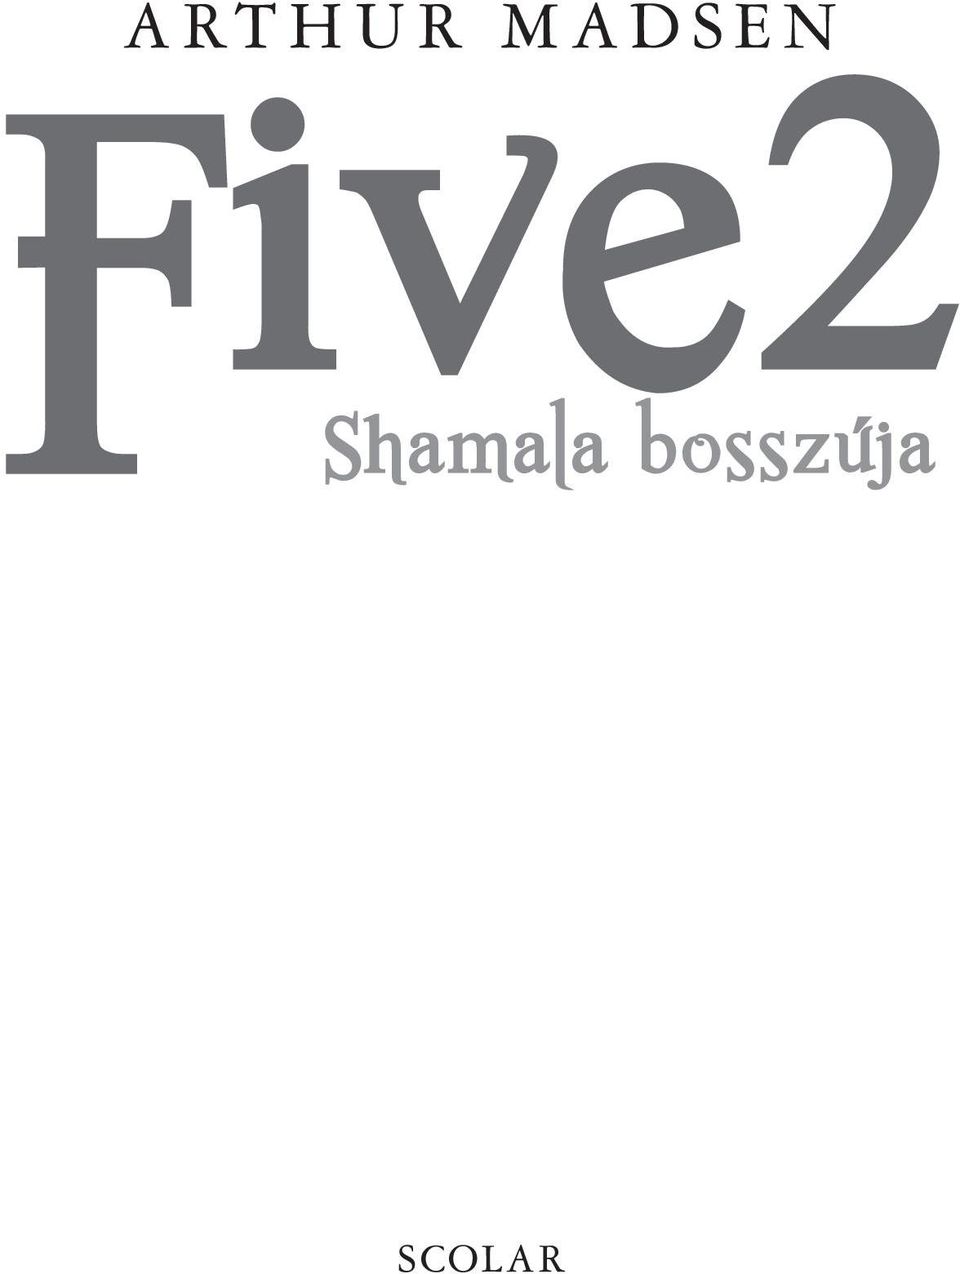 Five2